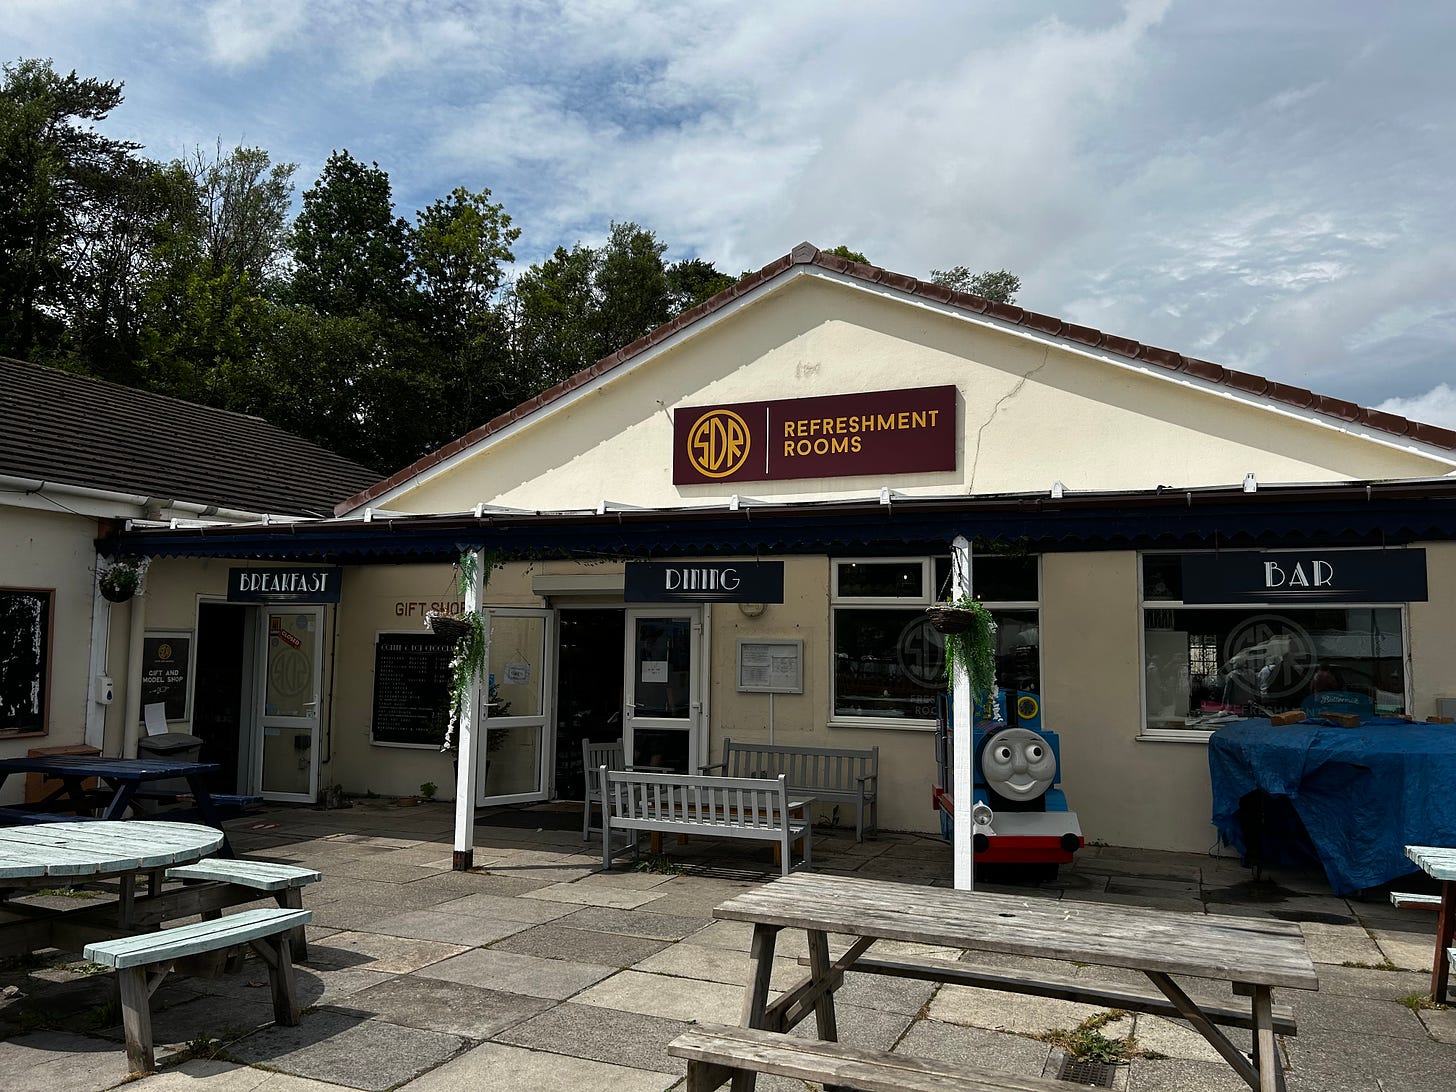 Birdies Cafe at South Devon Railway. Image: Roland's Travels